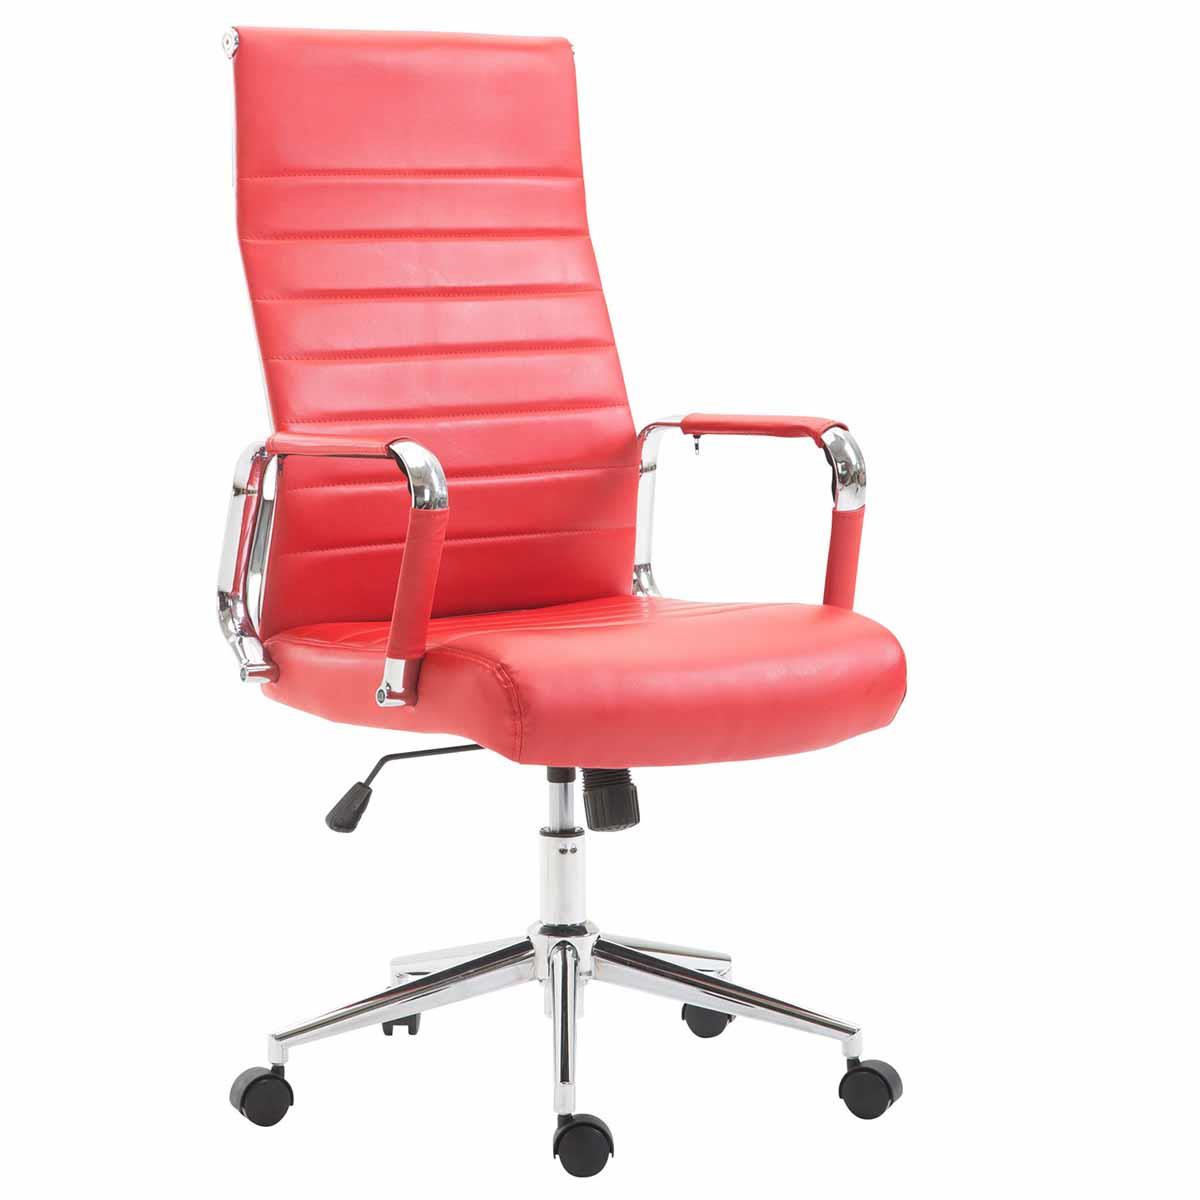 Sedia da Ufficio KOLMU, Design Accattivante, Struttura in Metallo, in Pelle, color Rosso